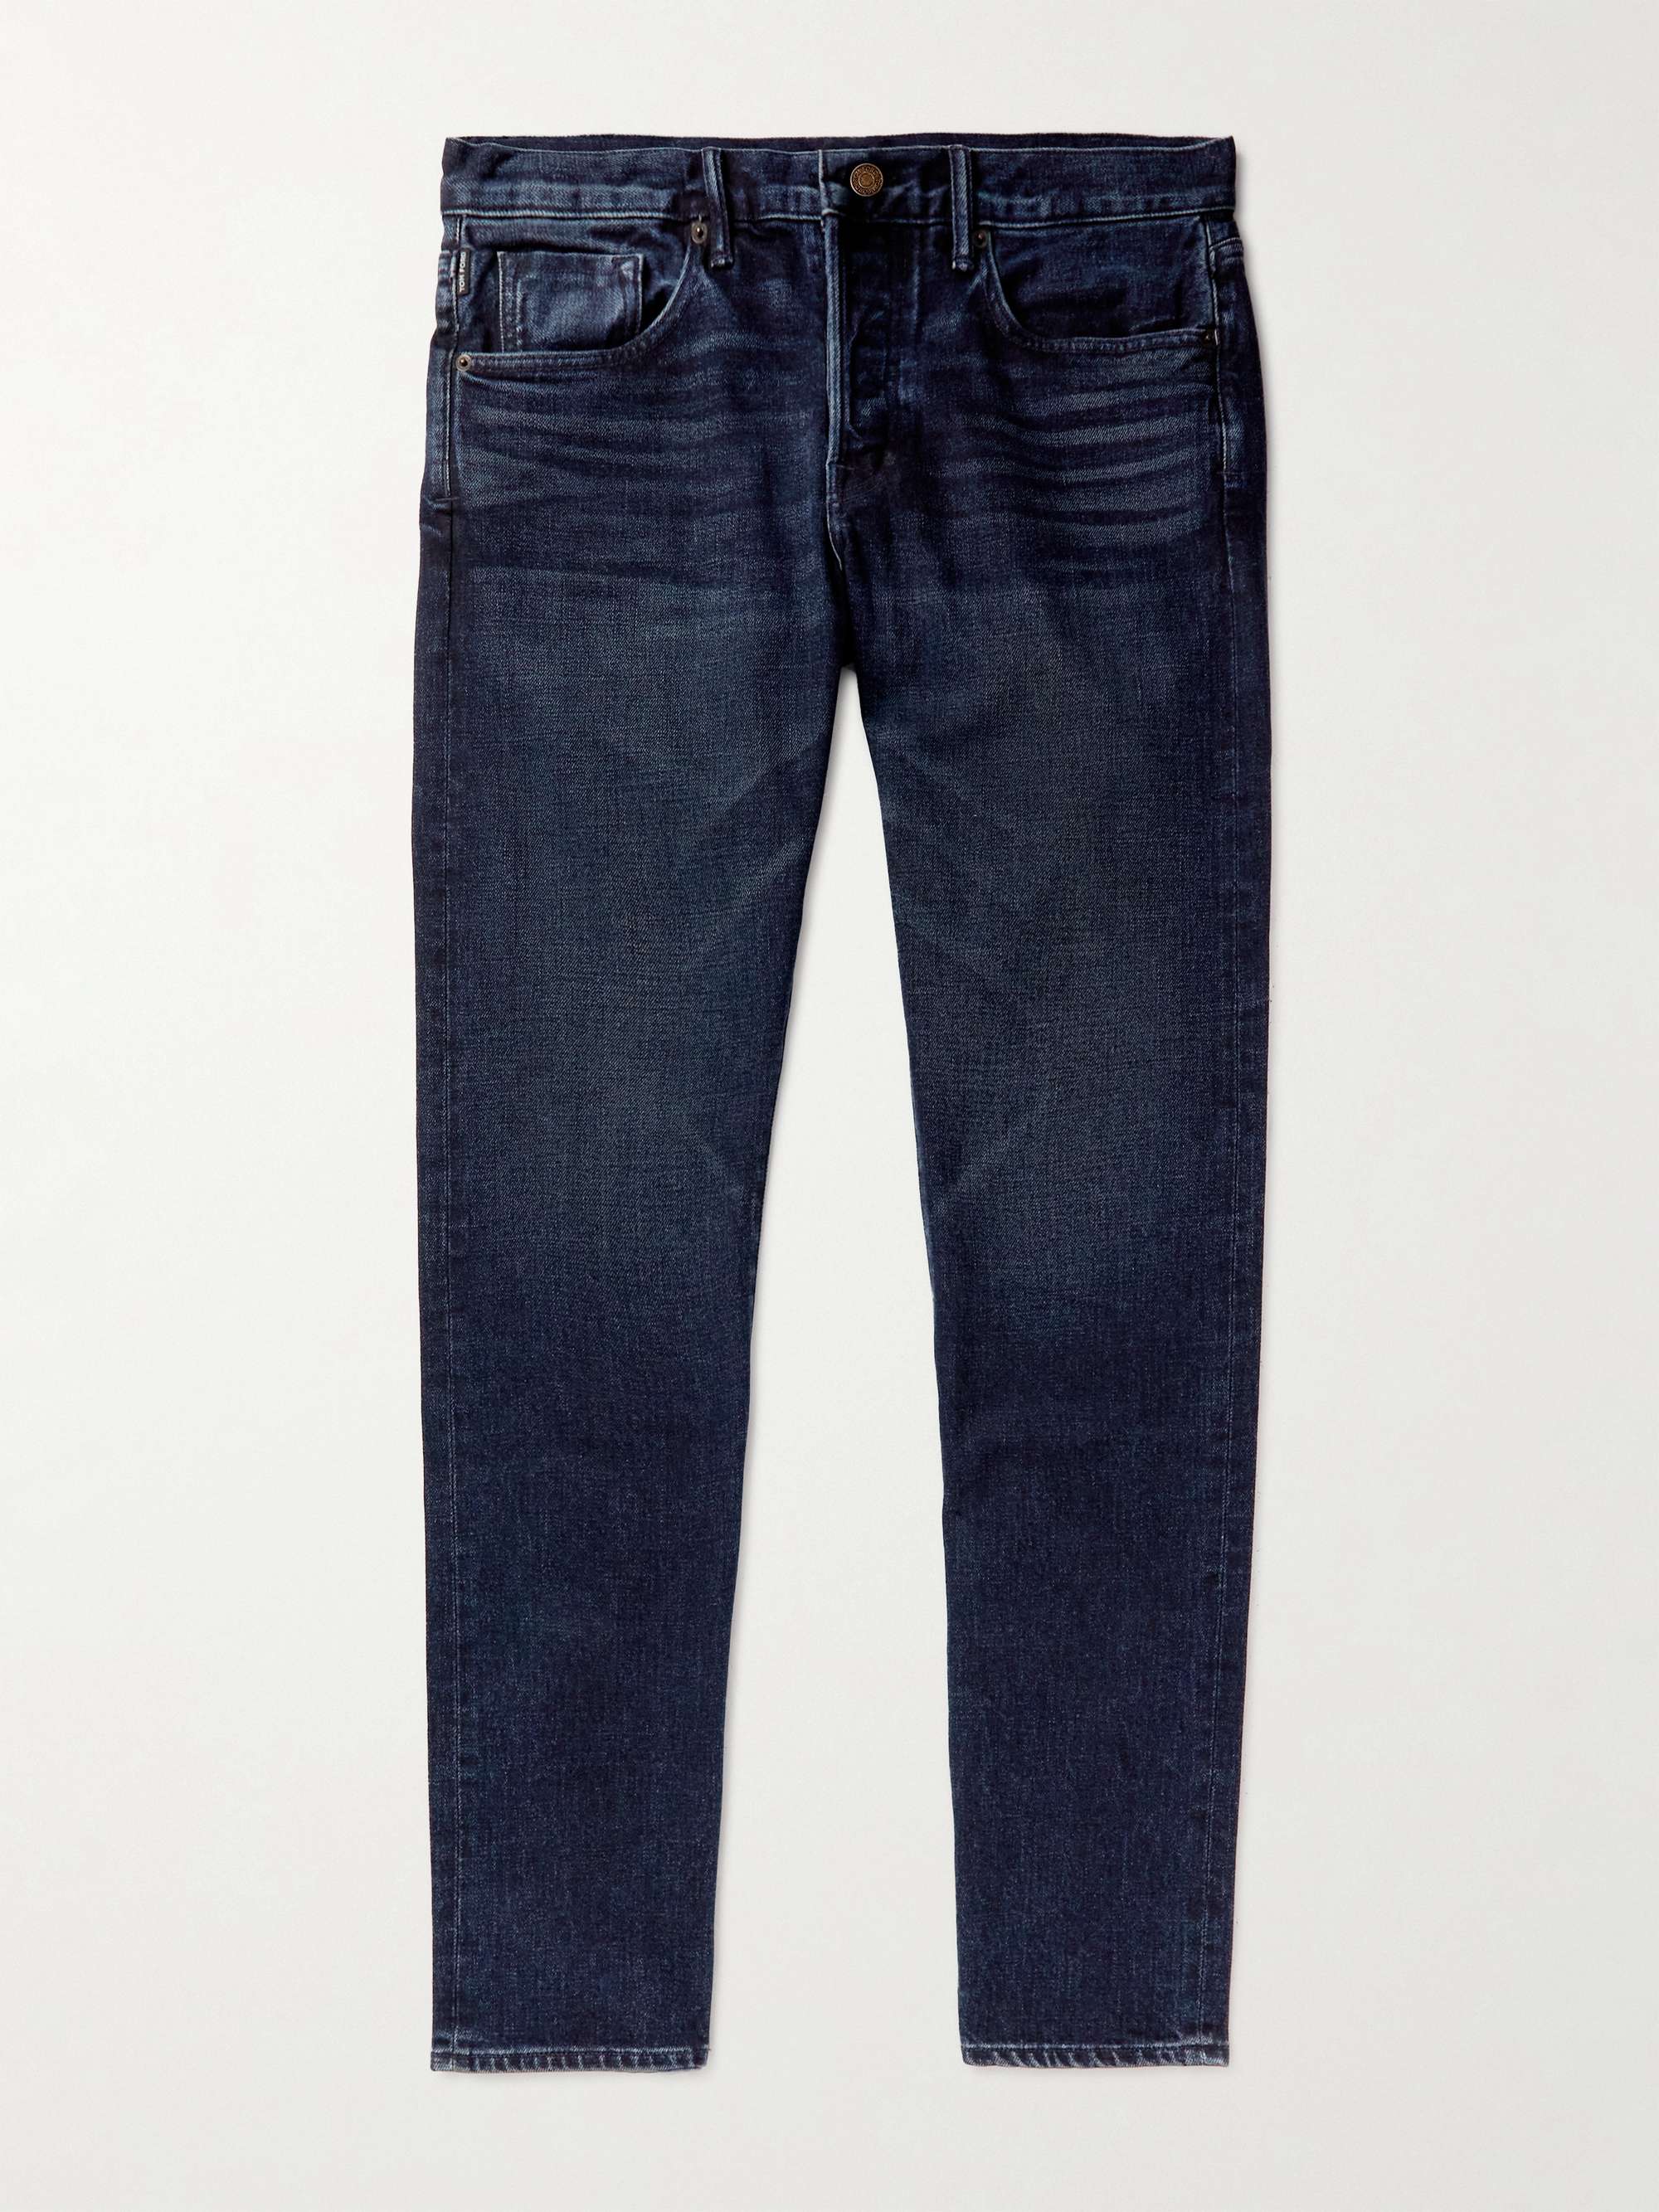 TOM FORD Straight-Leg Garment-Dyed Selvedge Jeans | MR PORTER